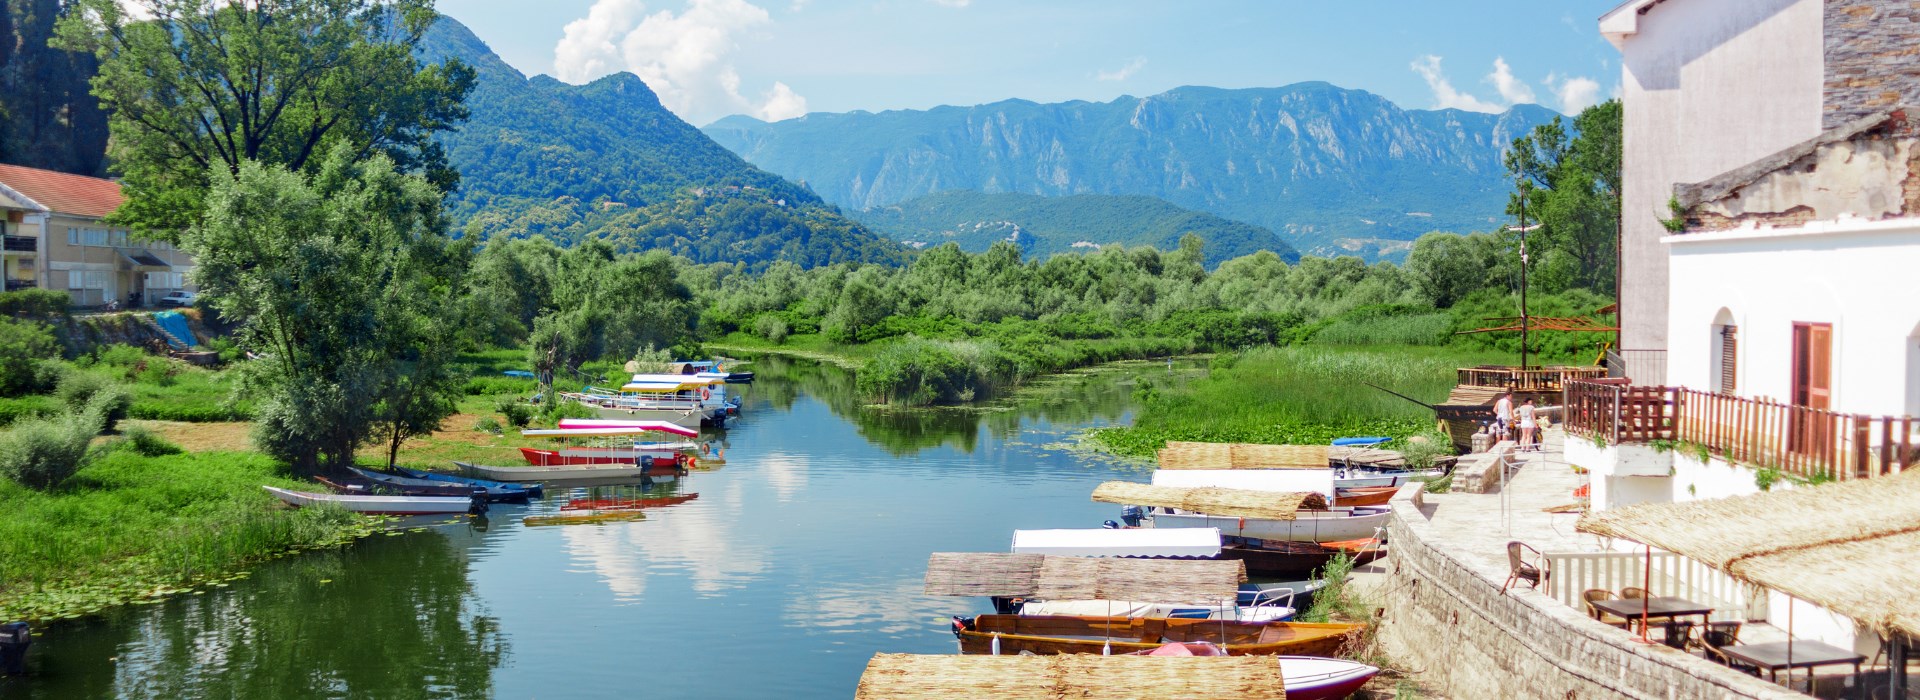 Visiter Le lac de Vau I Dejes - Albanie